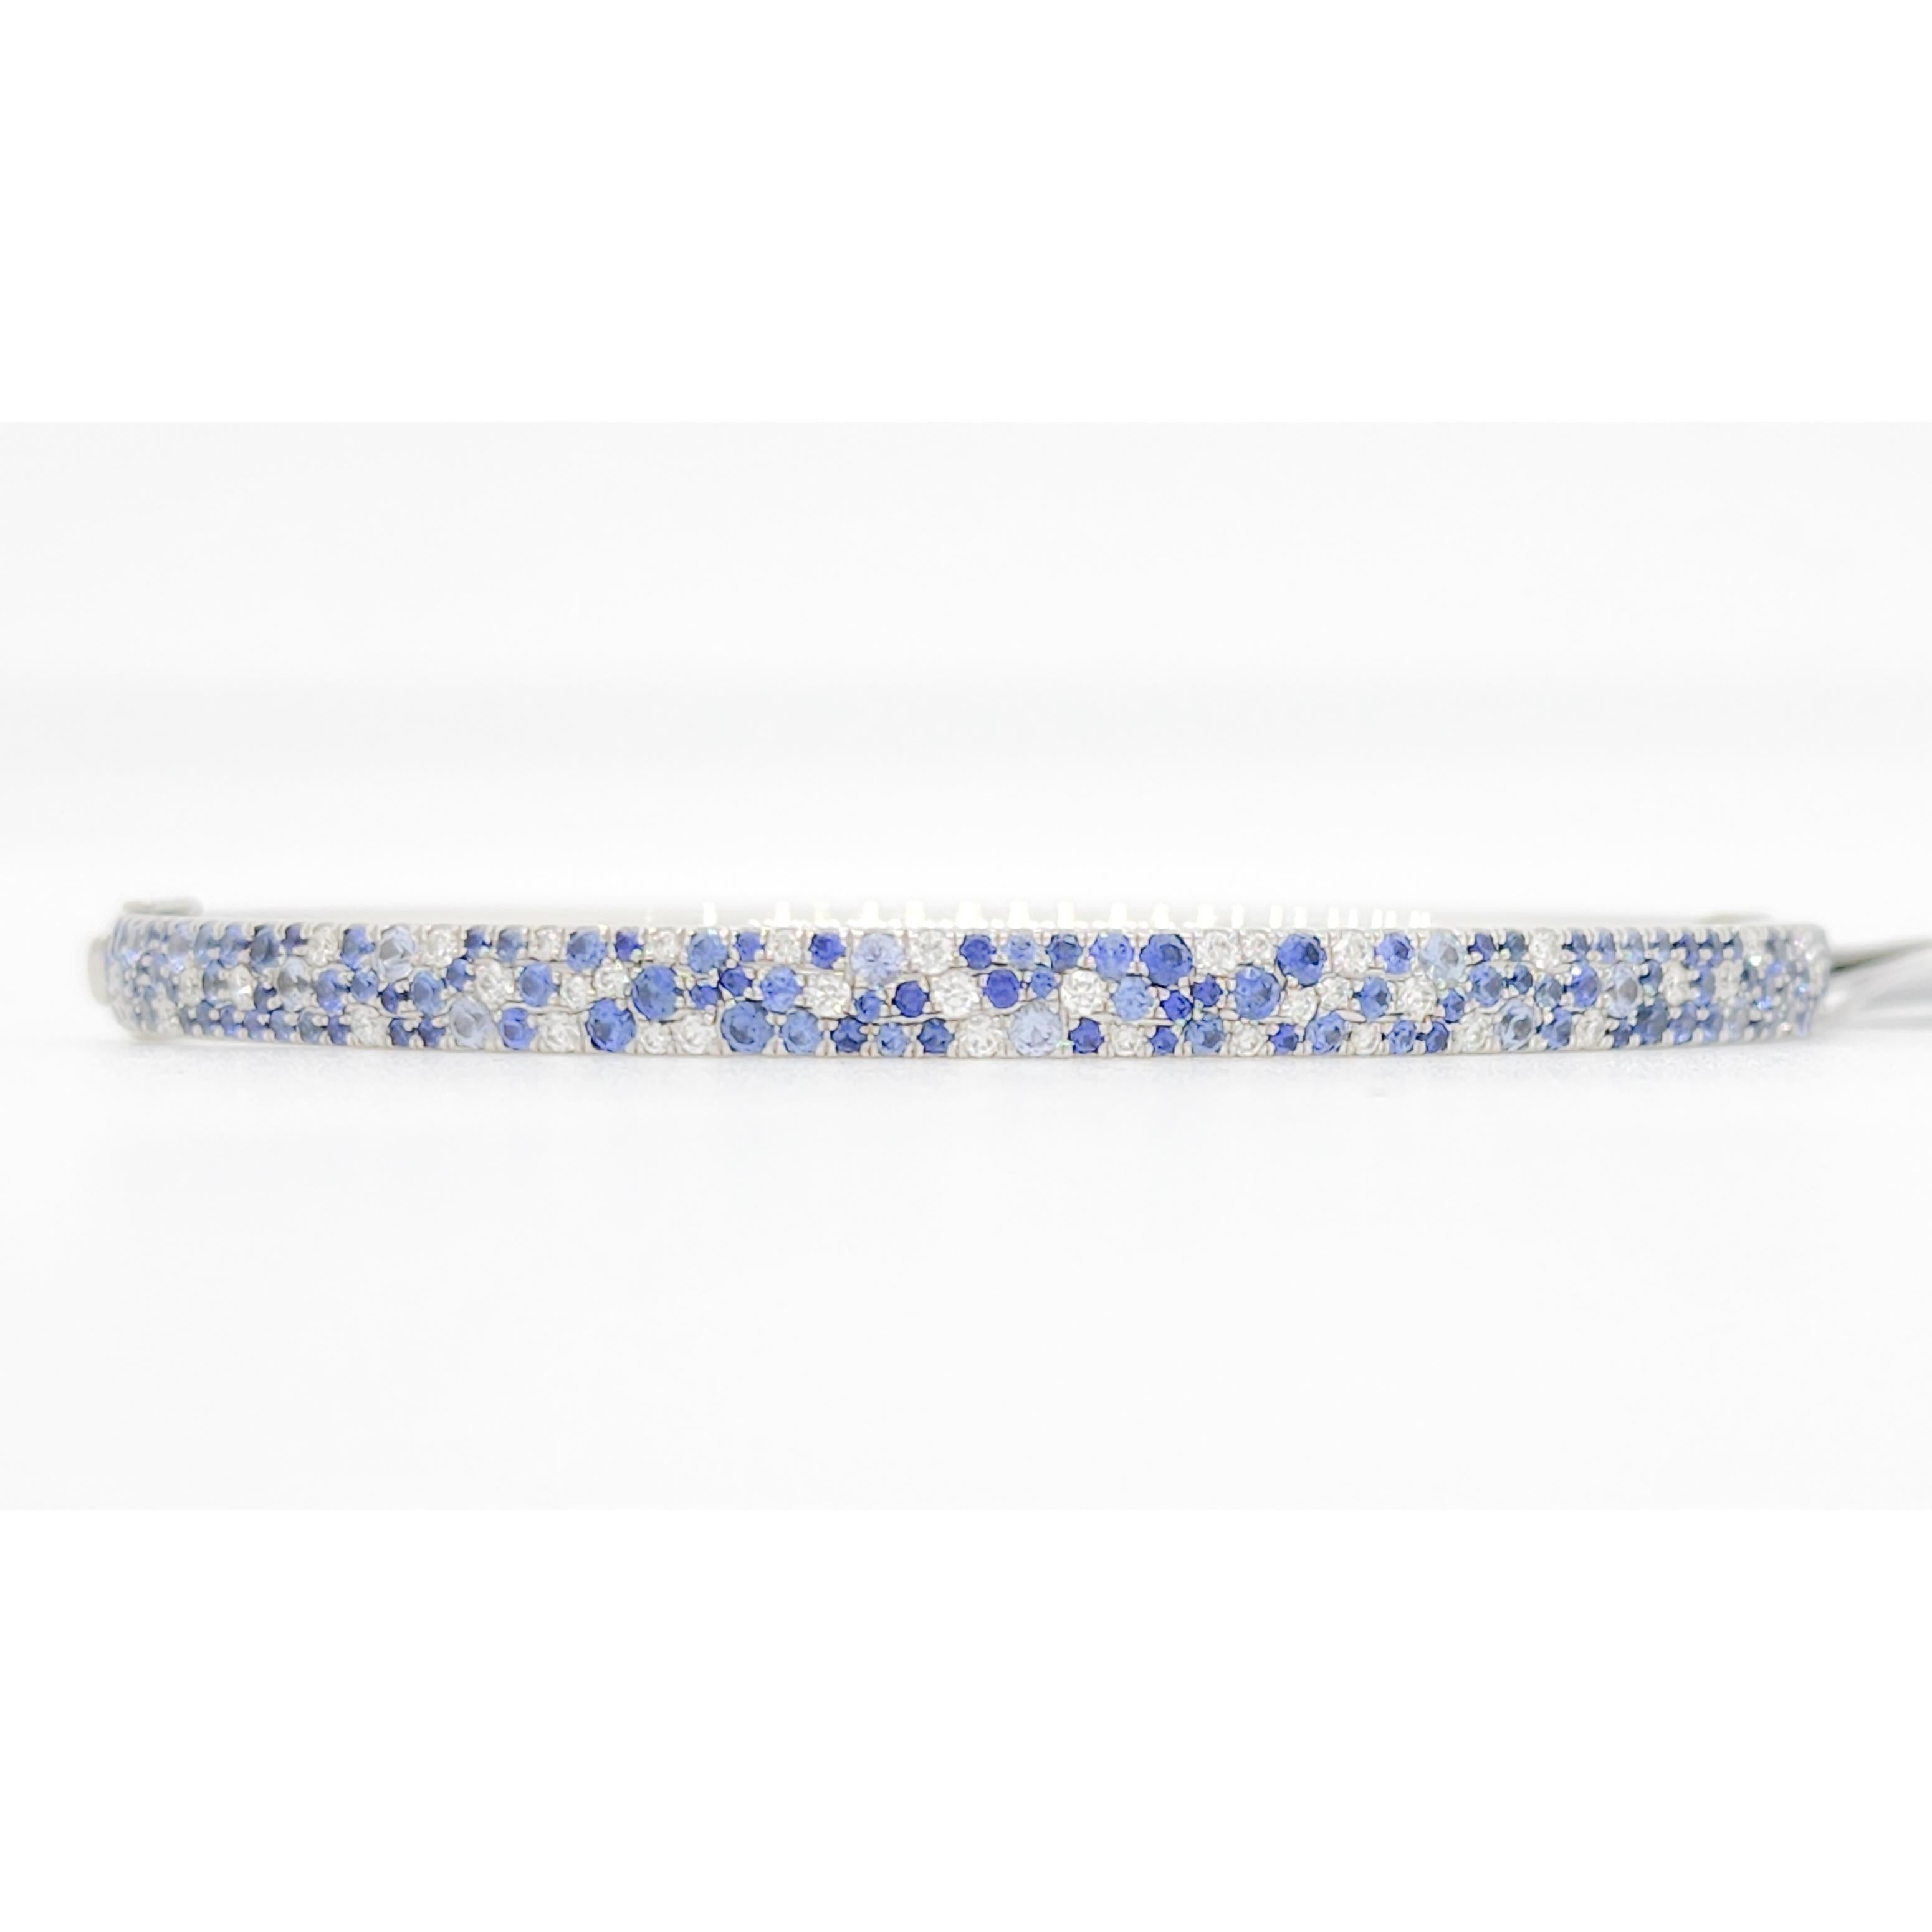 Gorgeous Tiffany & Company Metro Armreif mit 4,00 ct. gute Qualität blauen Saphir rund und 1,00 ct. gute Qualität weißen Diamanten rund.  Handgefertigt aus 18k Weißgold.  